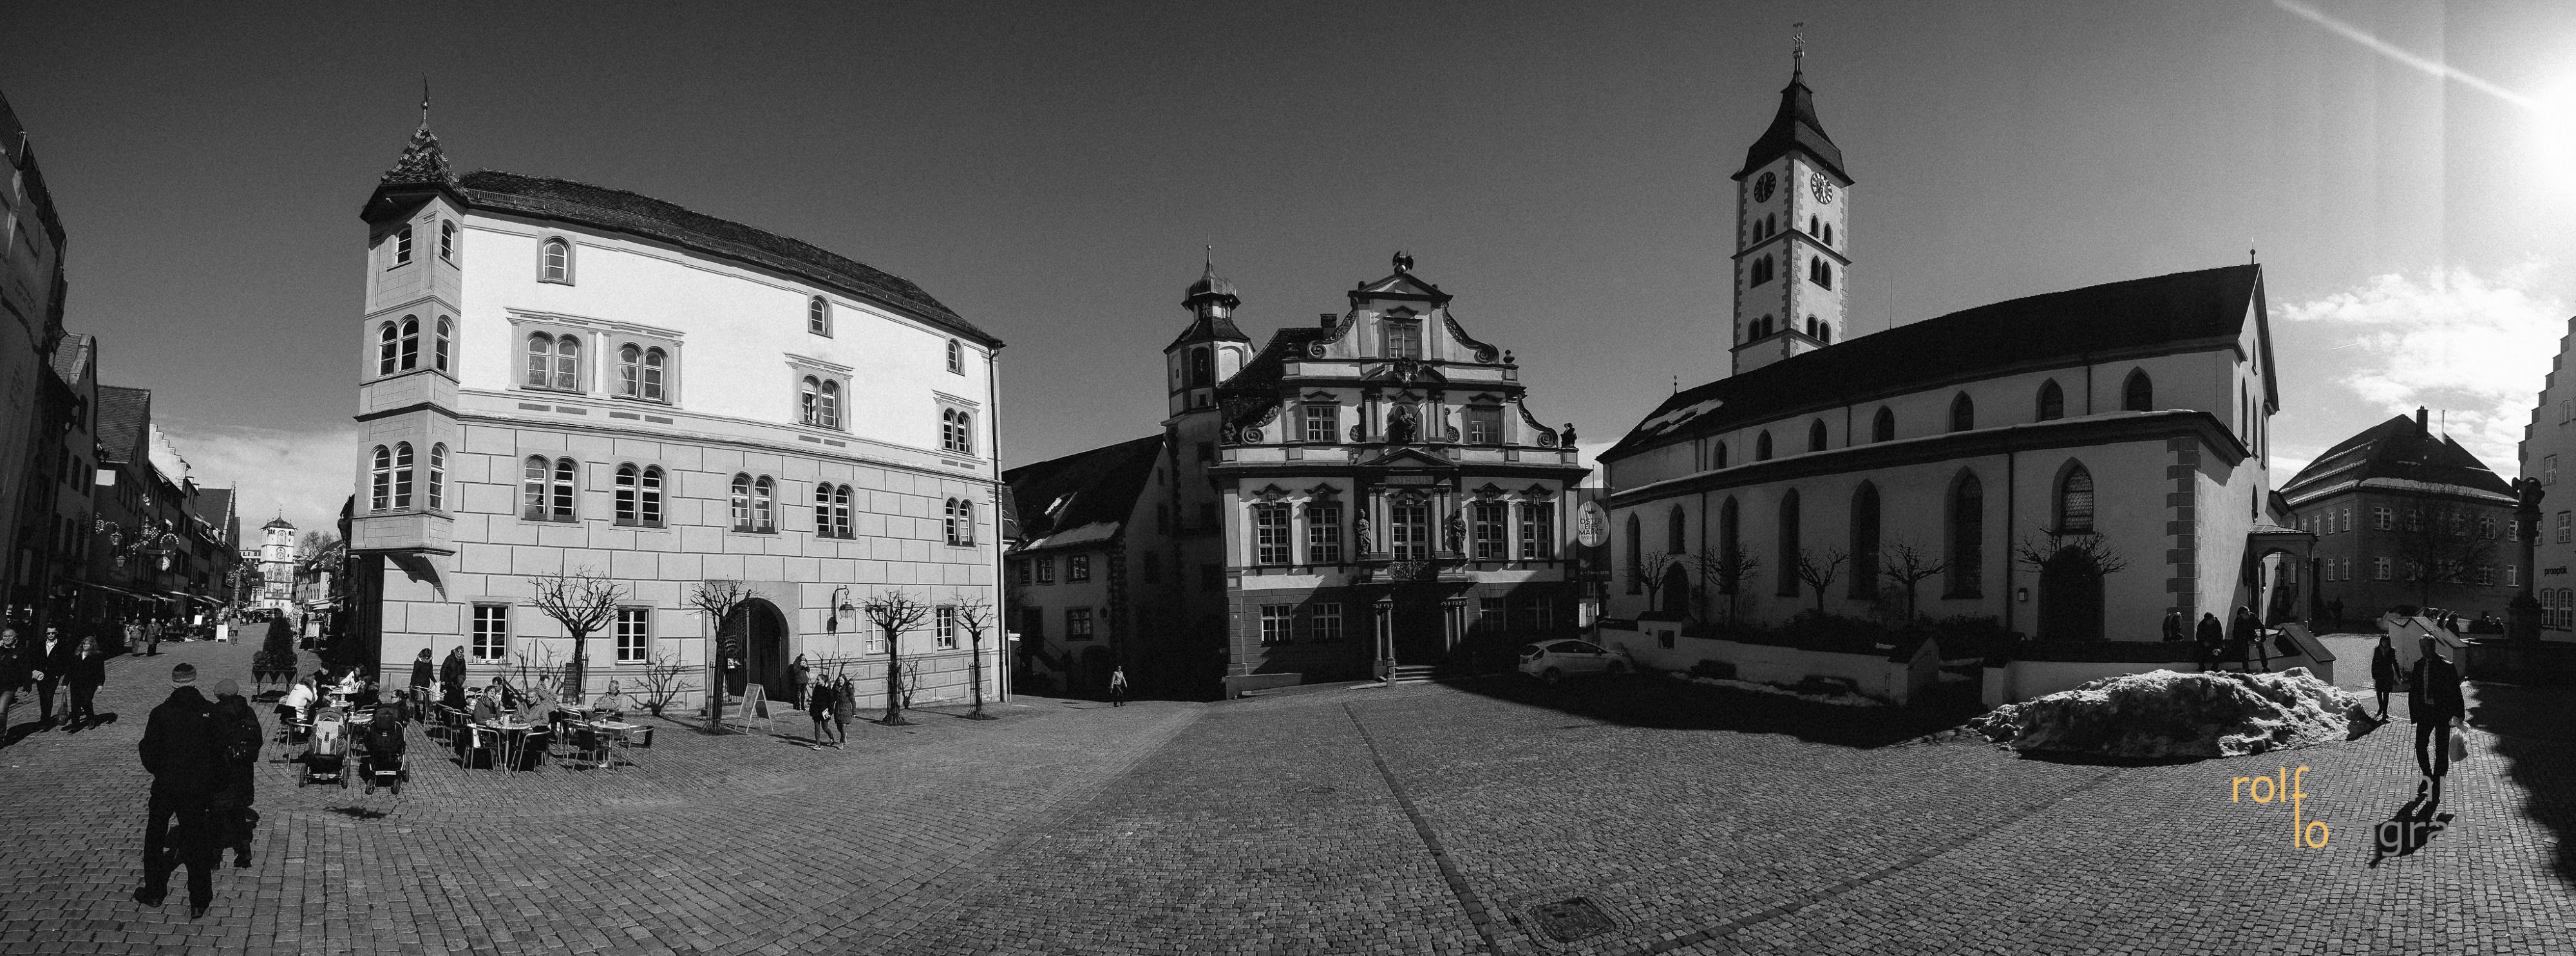 Rathaus und Marktplatz in Wangen